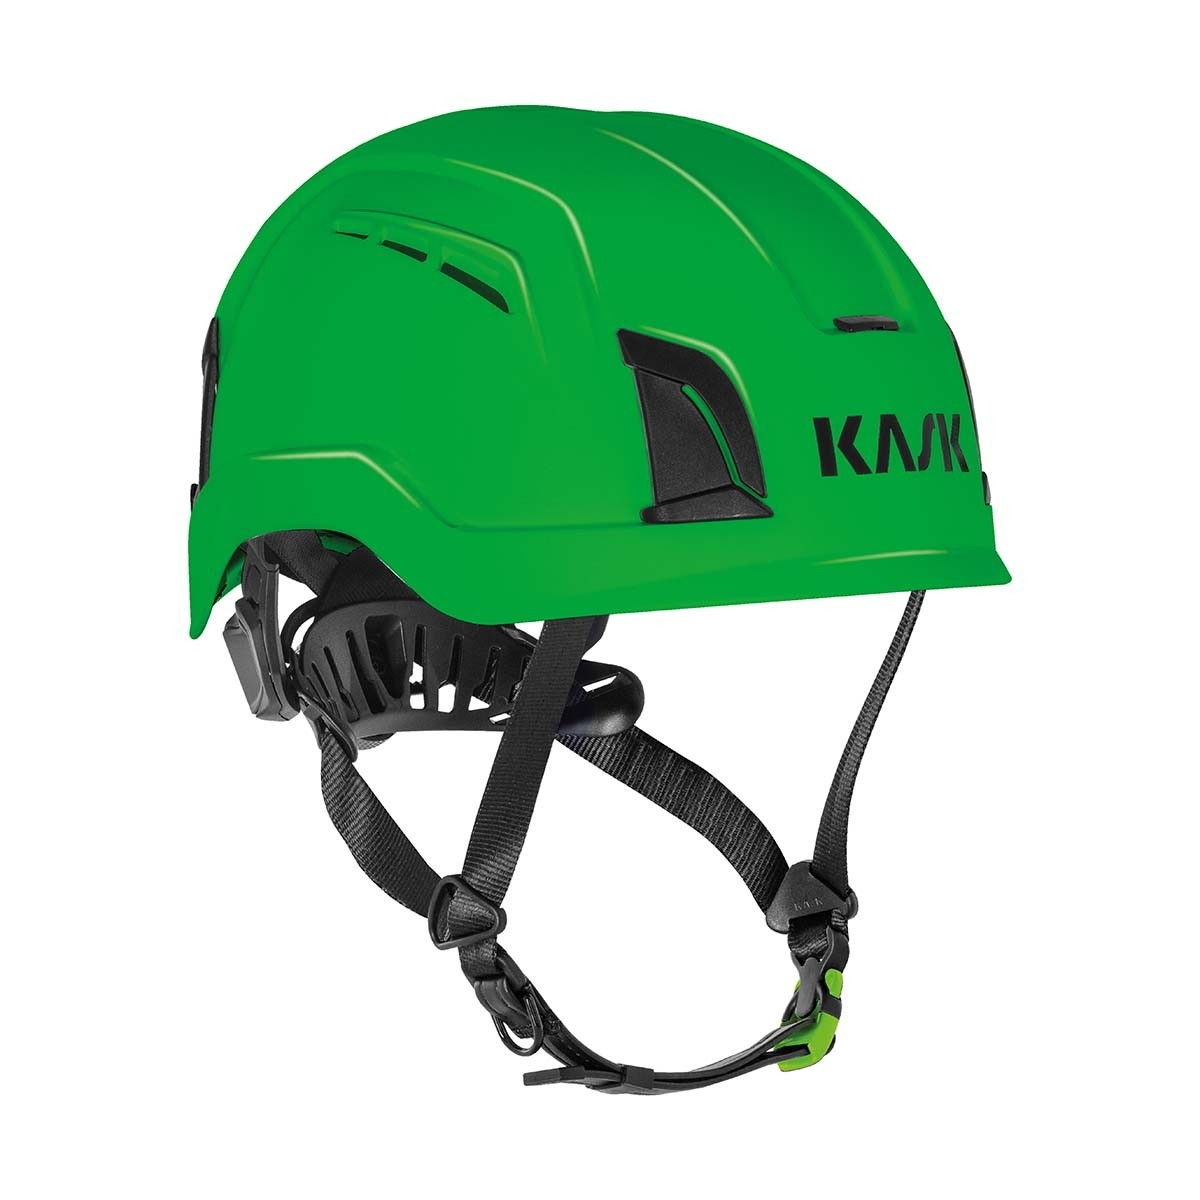 helmets › ZENITH X › ZENITH X AIR ANSI Z89.1 Type 1 Class C EN 